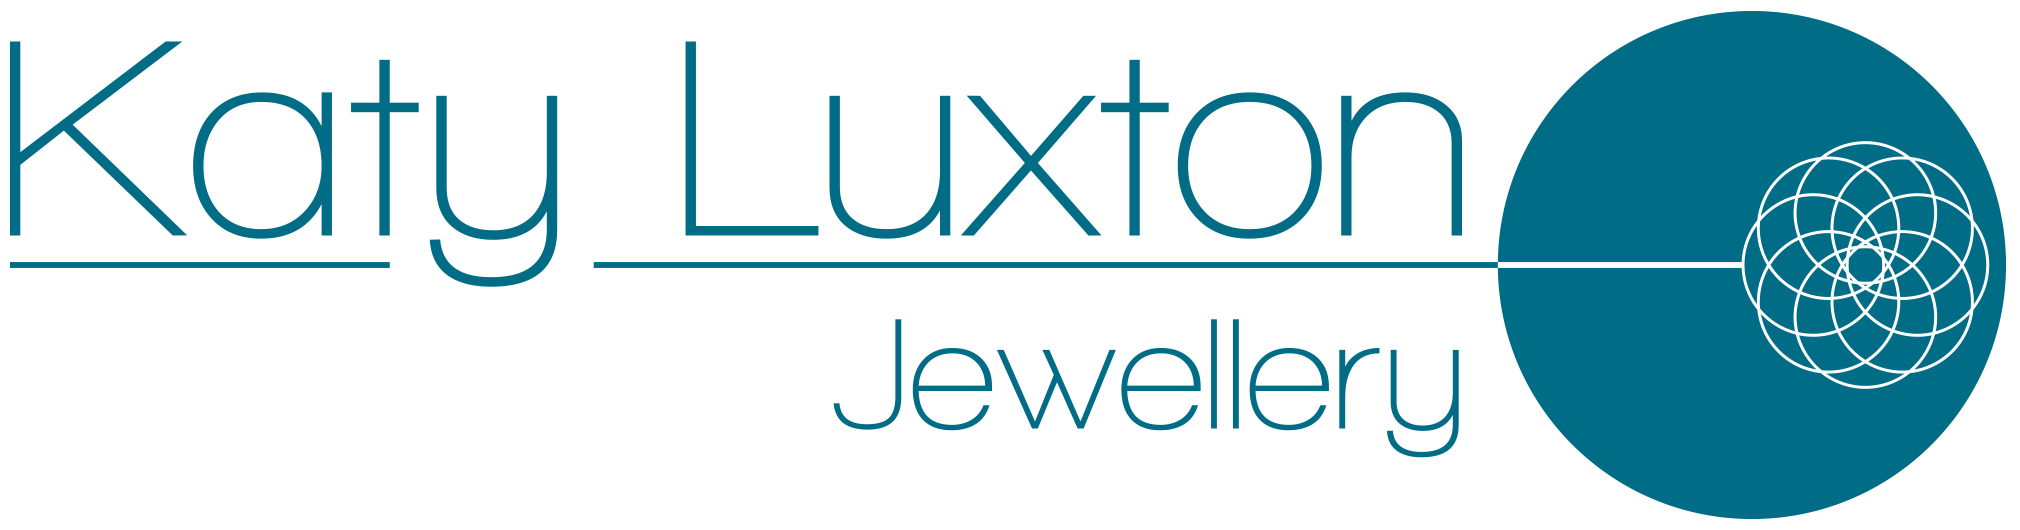 Katy Luxton Jewellery